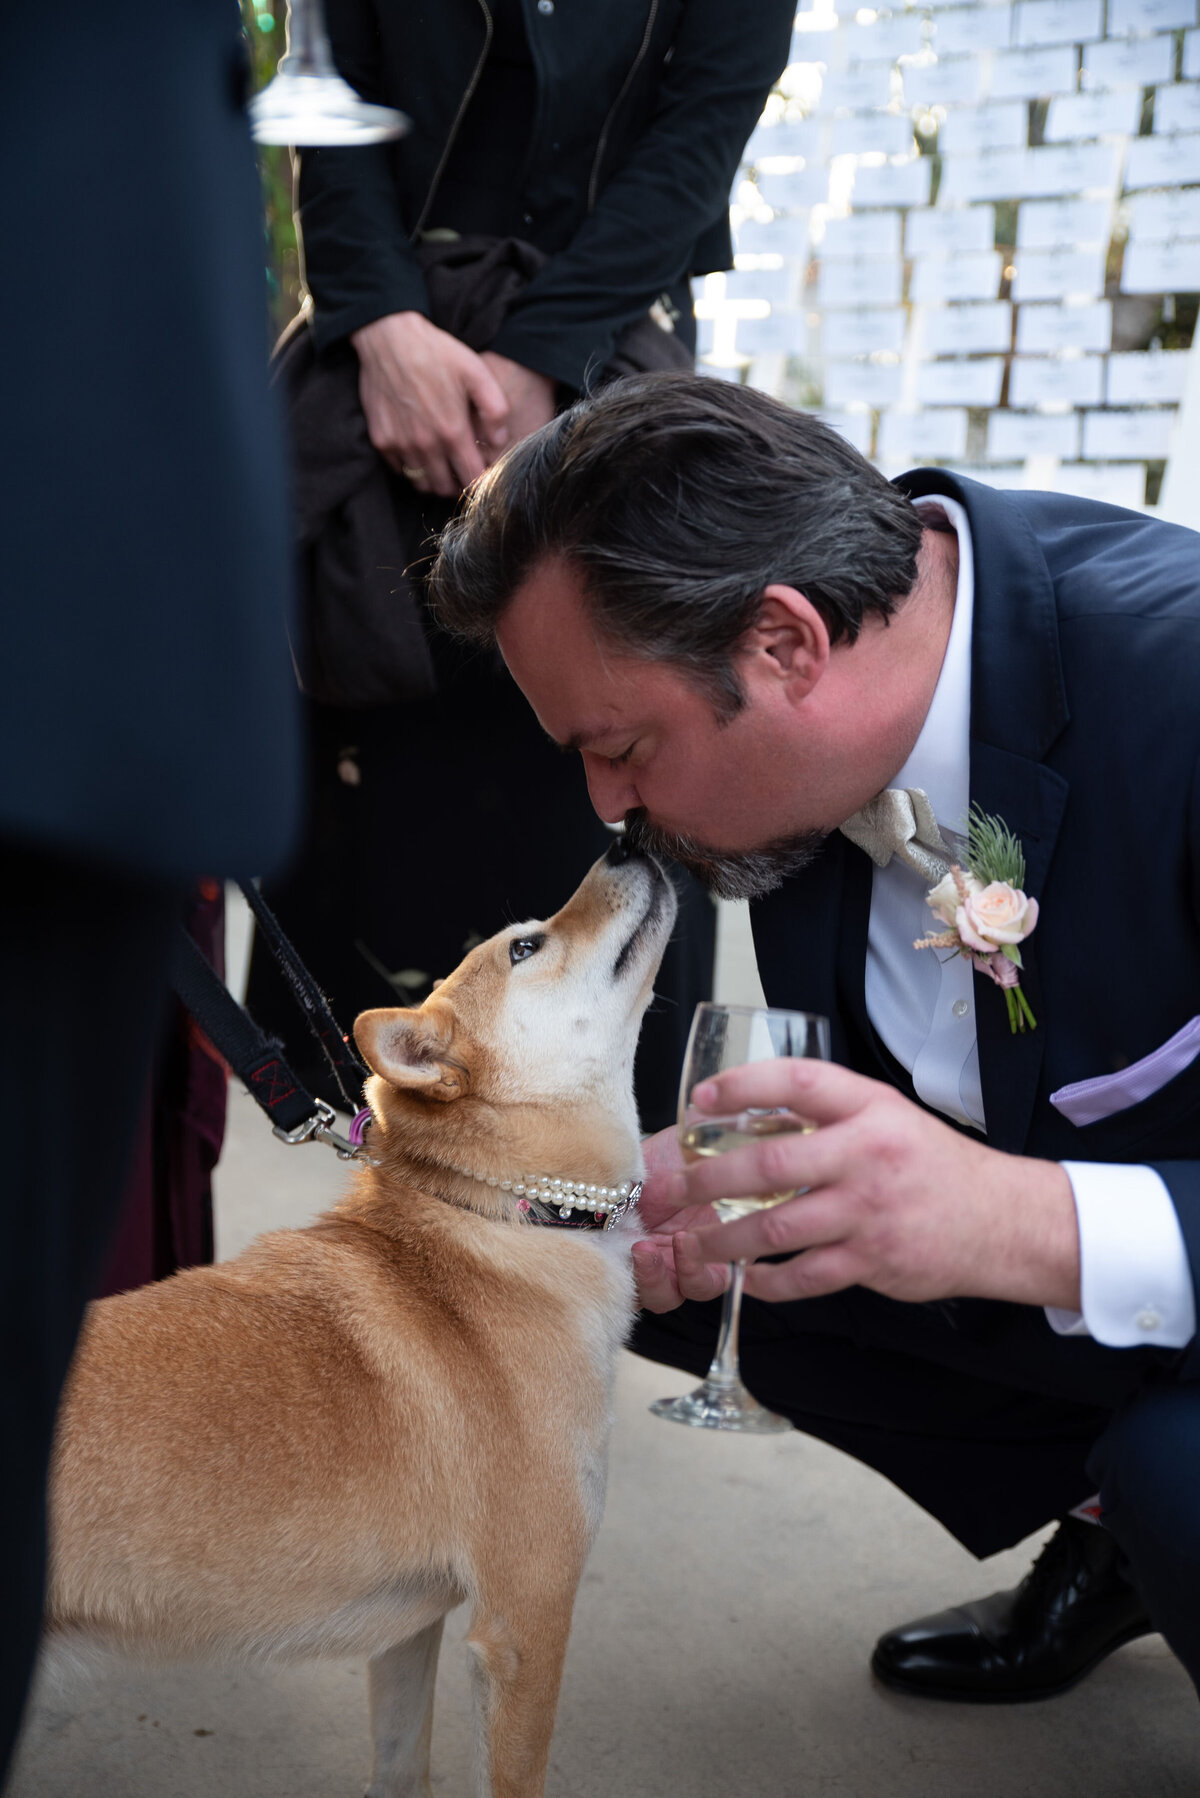 broom kissing his dog at his wedding